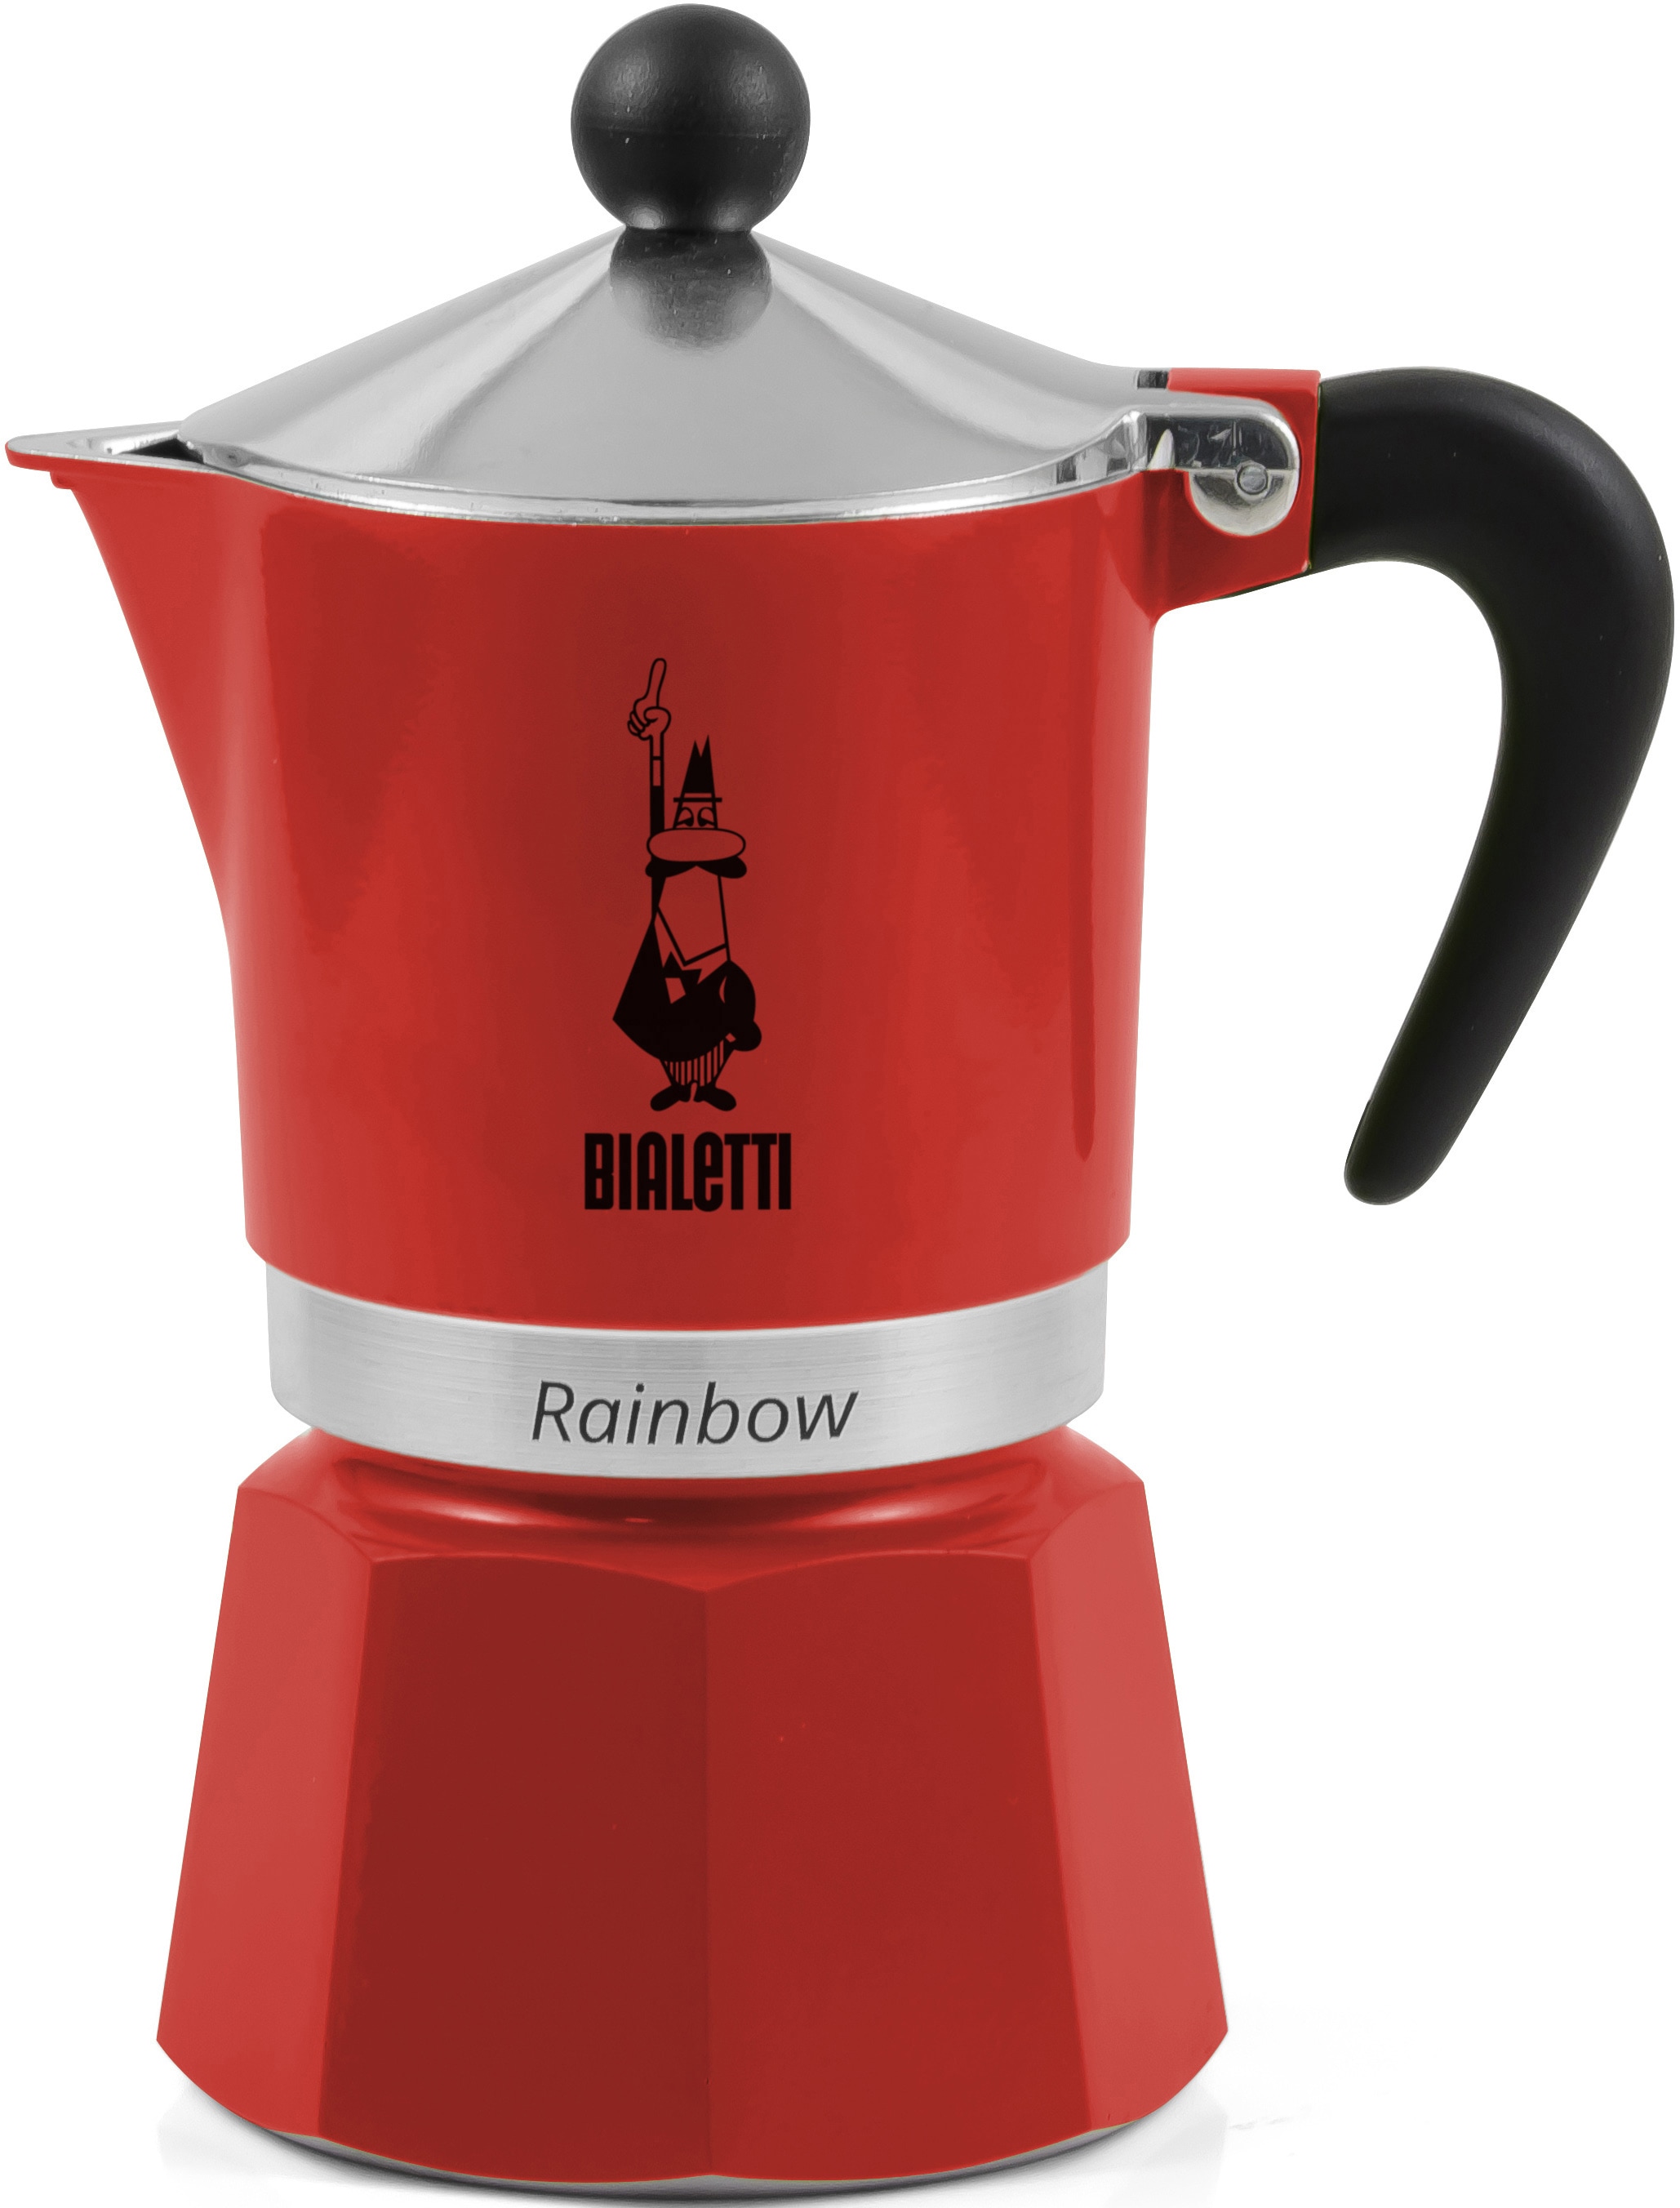 BIALETTI Espressokocher »Rainbow«, 0,06 l Kaffeekanne, Aluminium